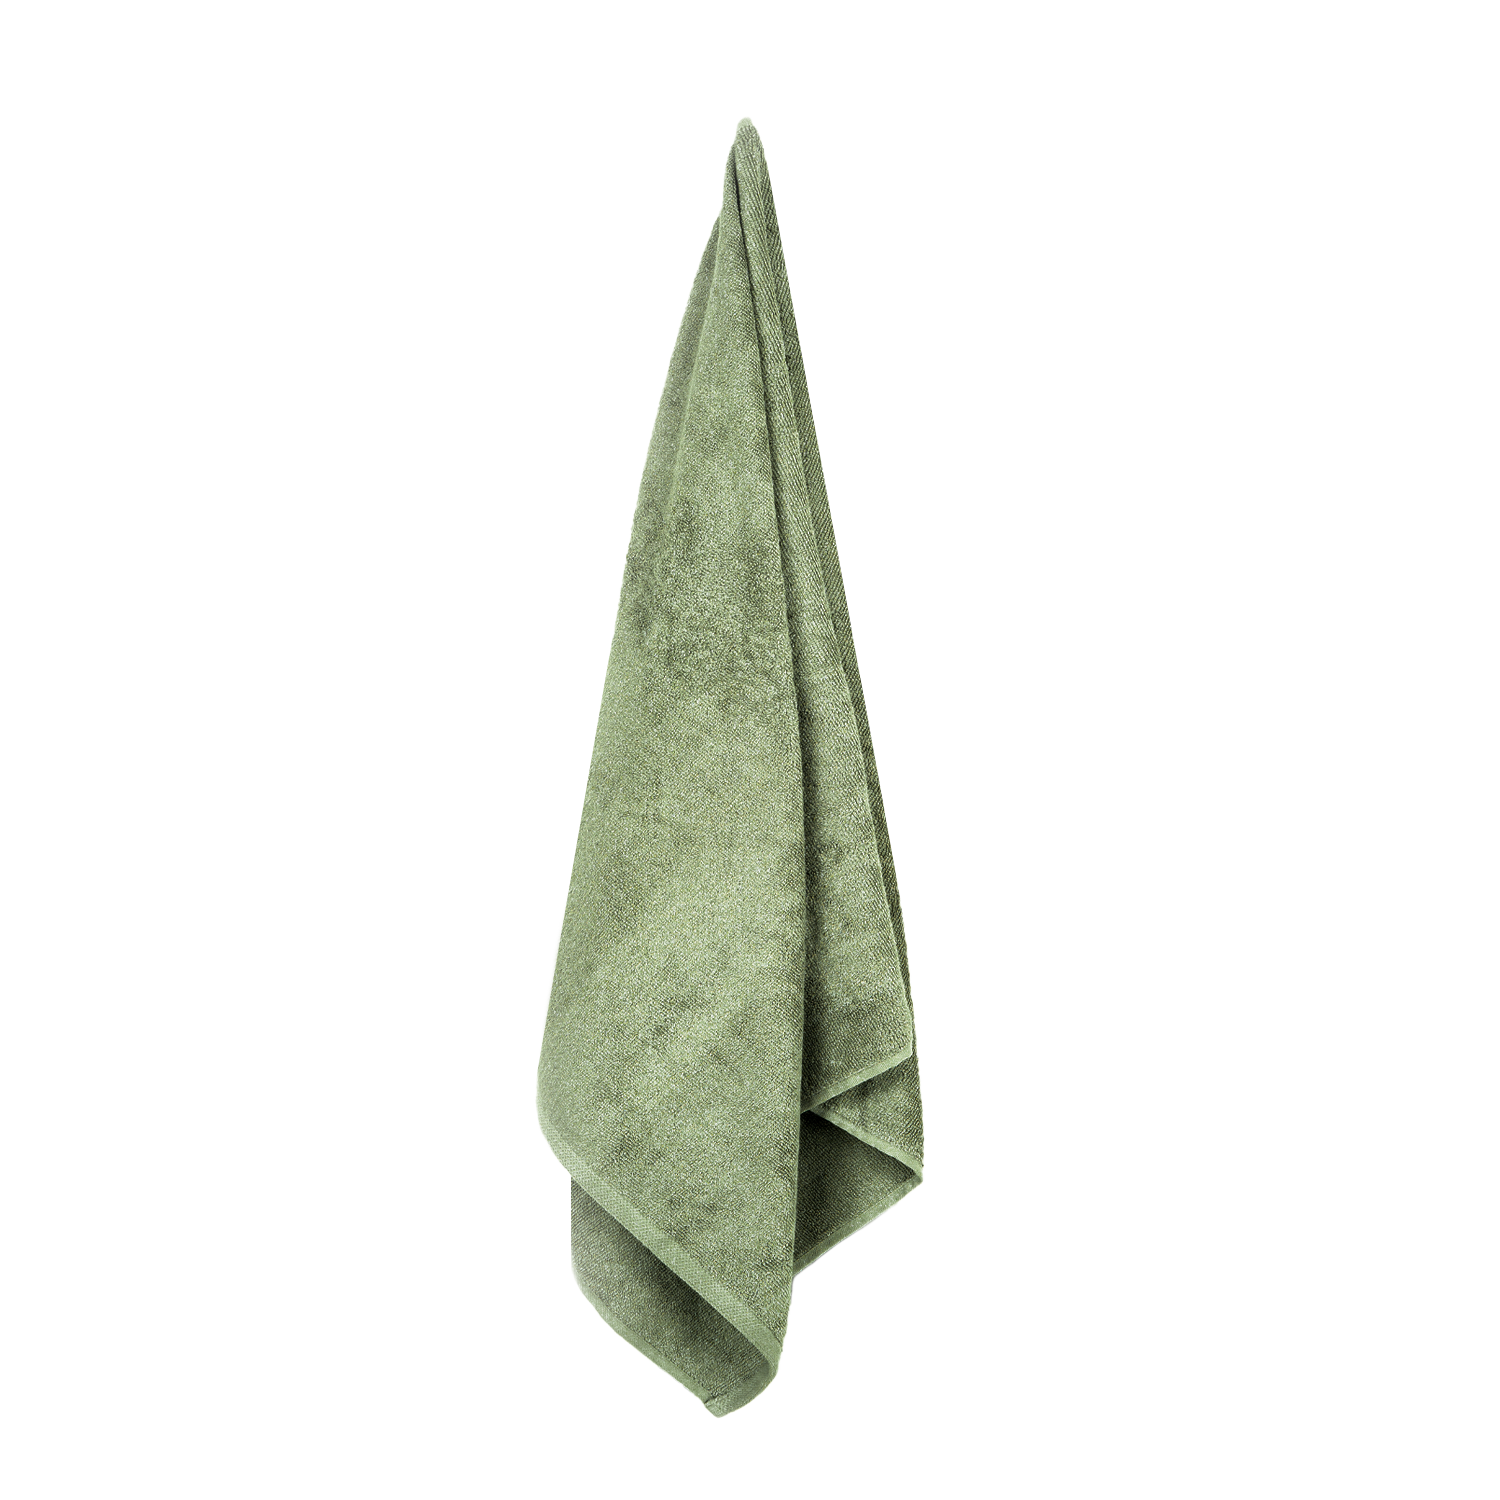 Produktbillede af bambushåndklæde i oliven grøn